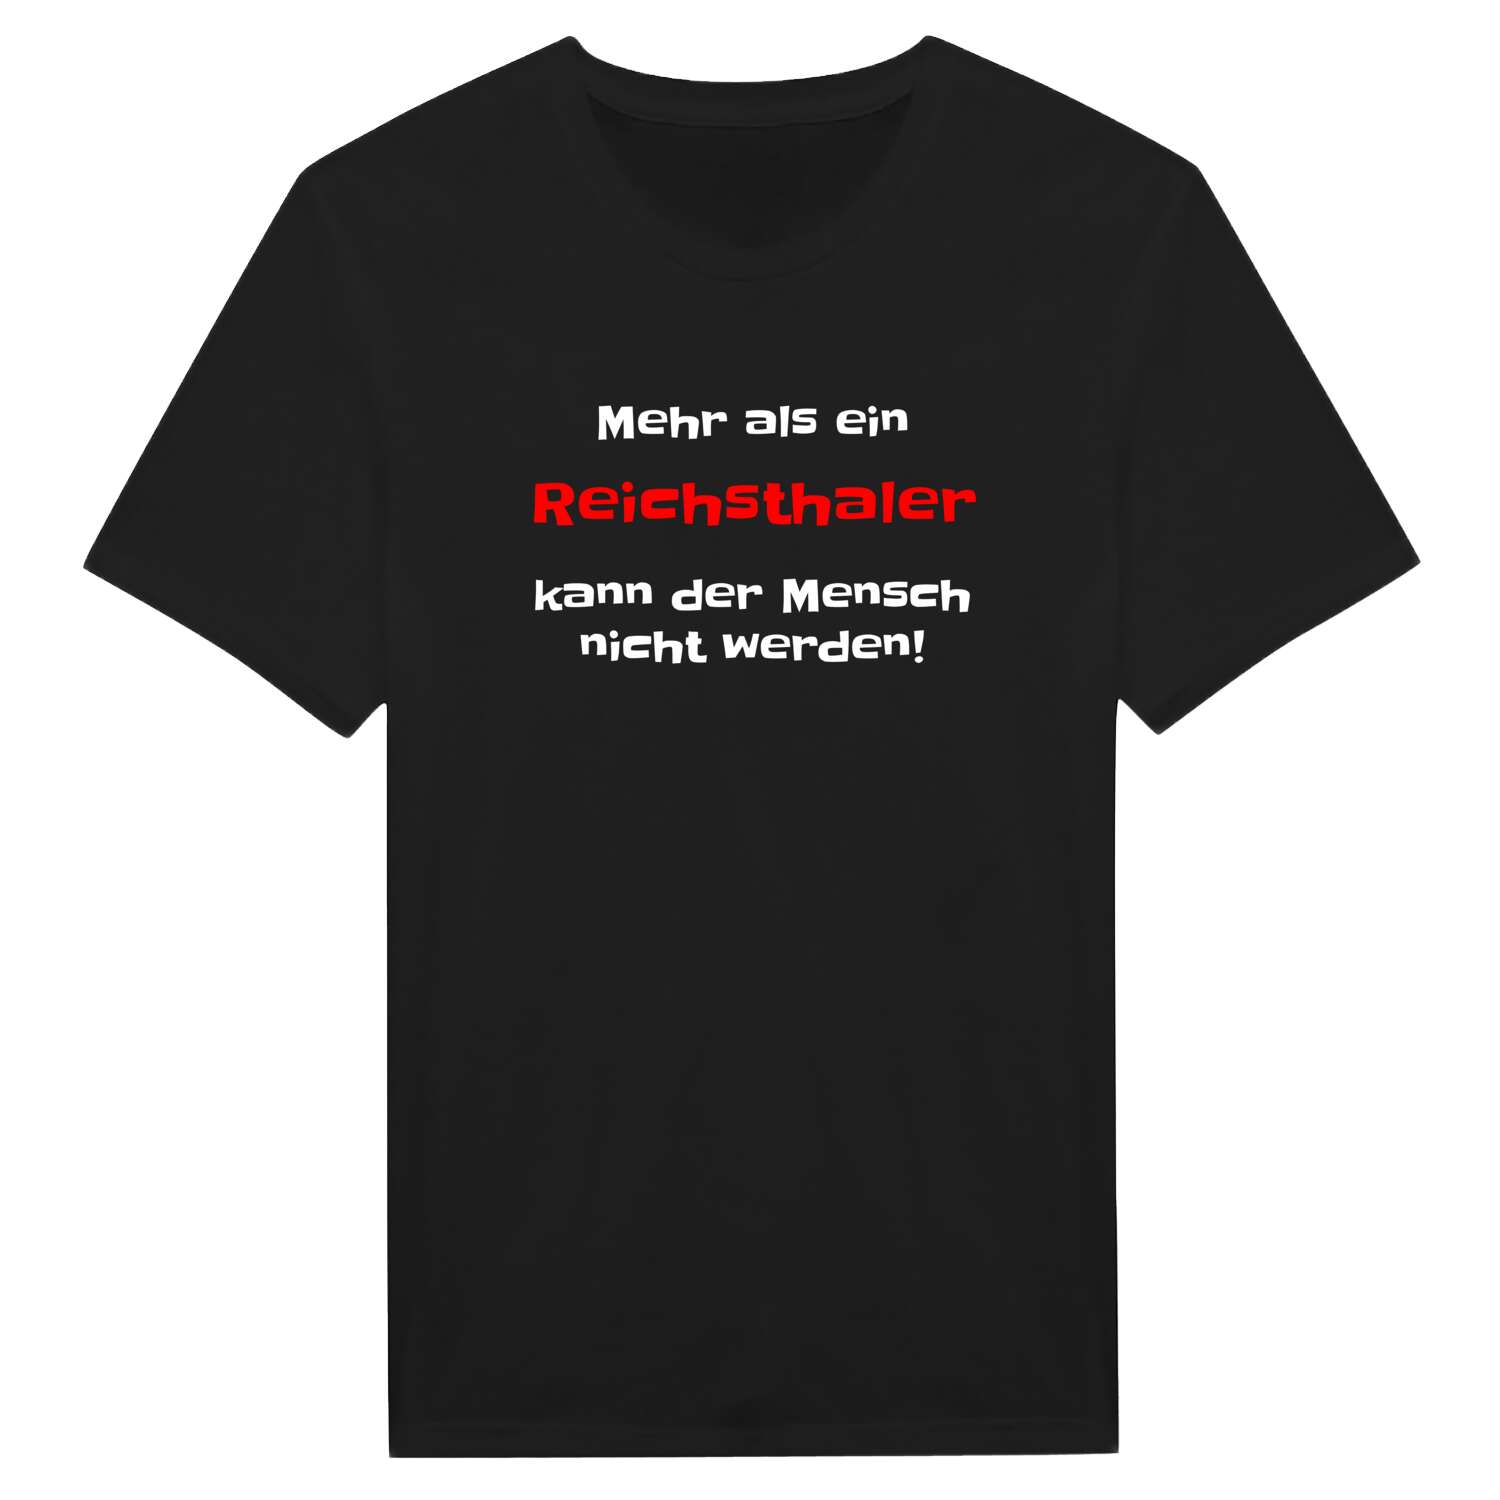 Reichsthal T-Shirt »Mehr als ein«